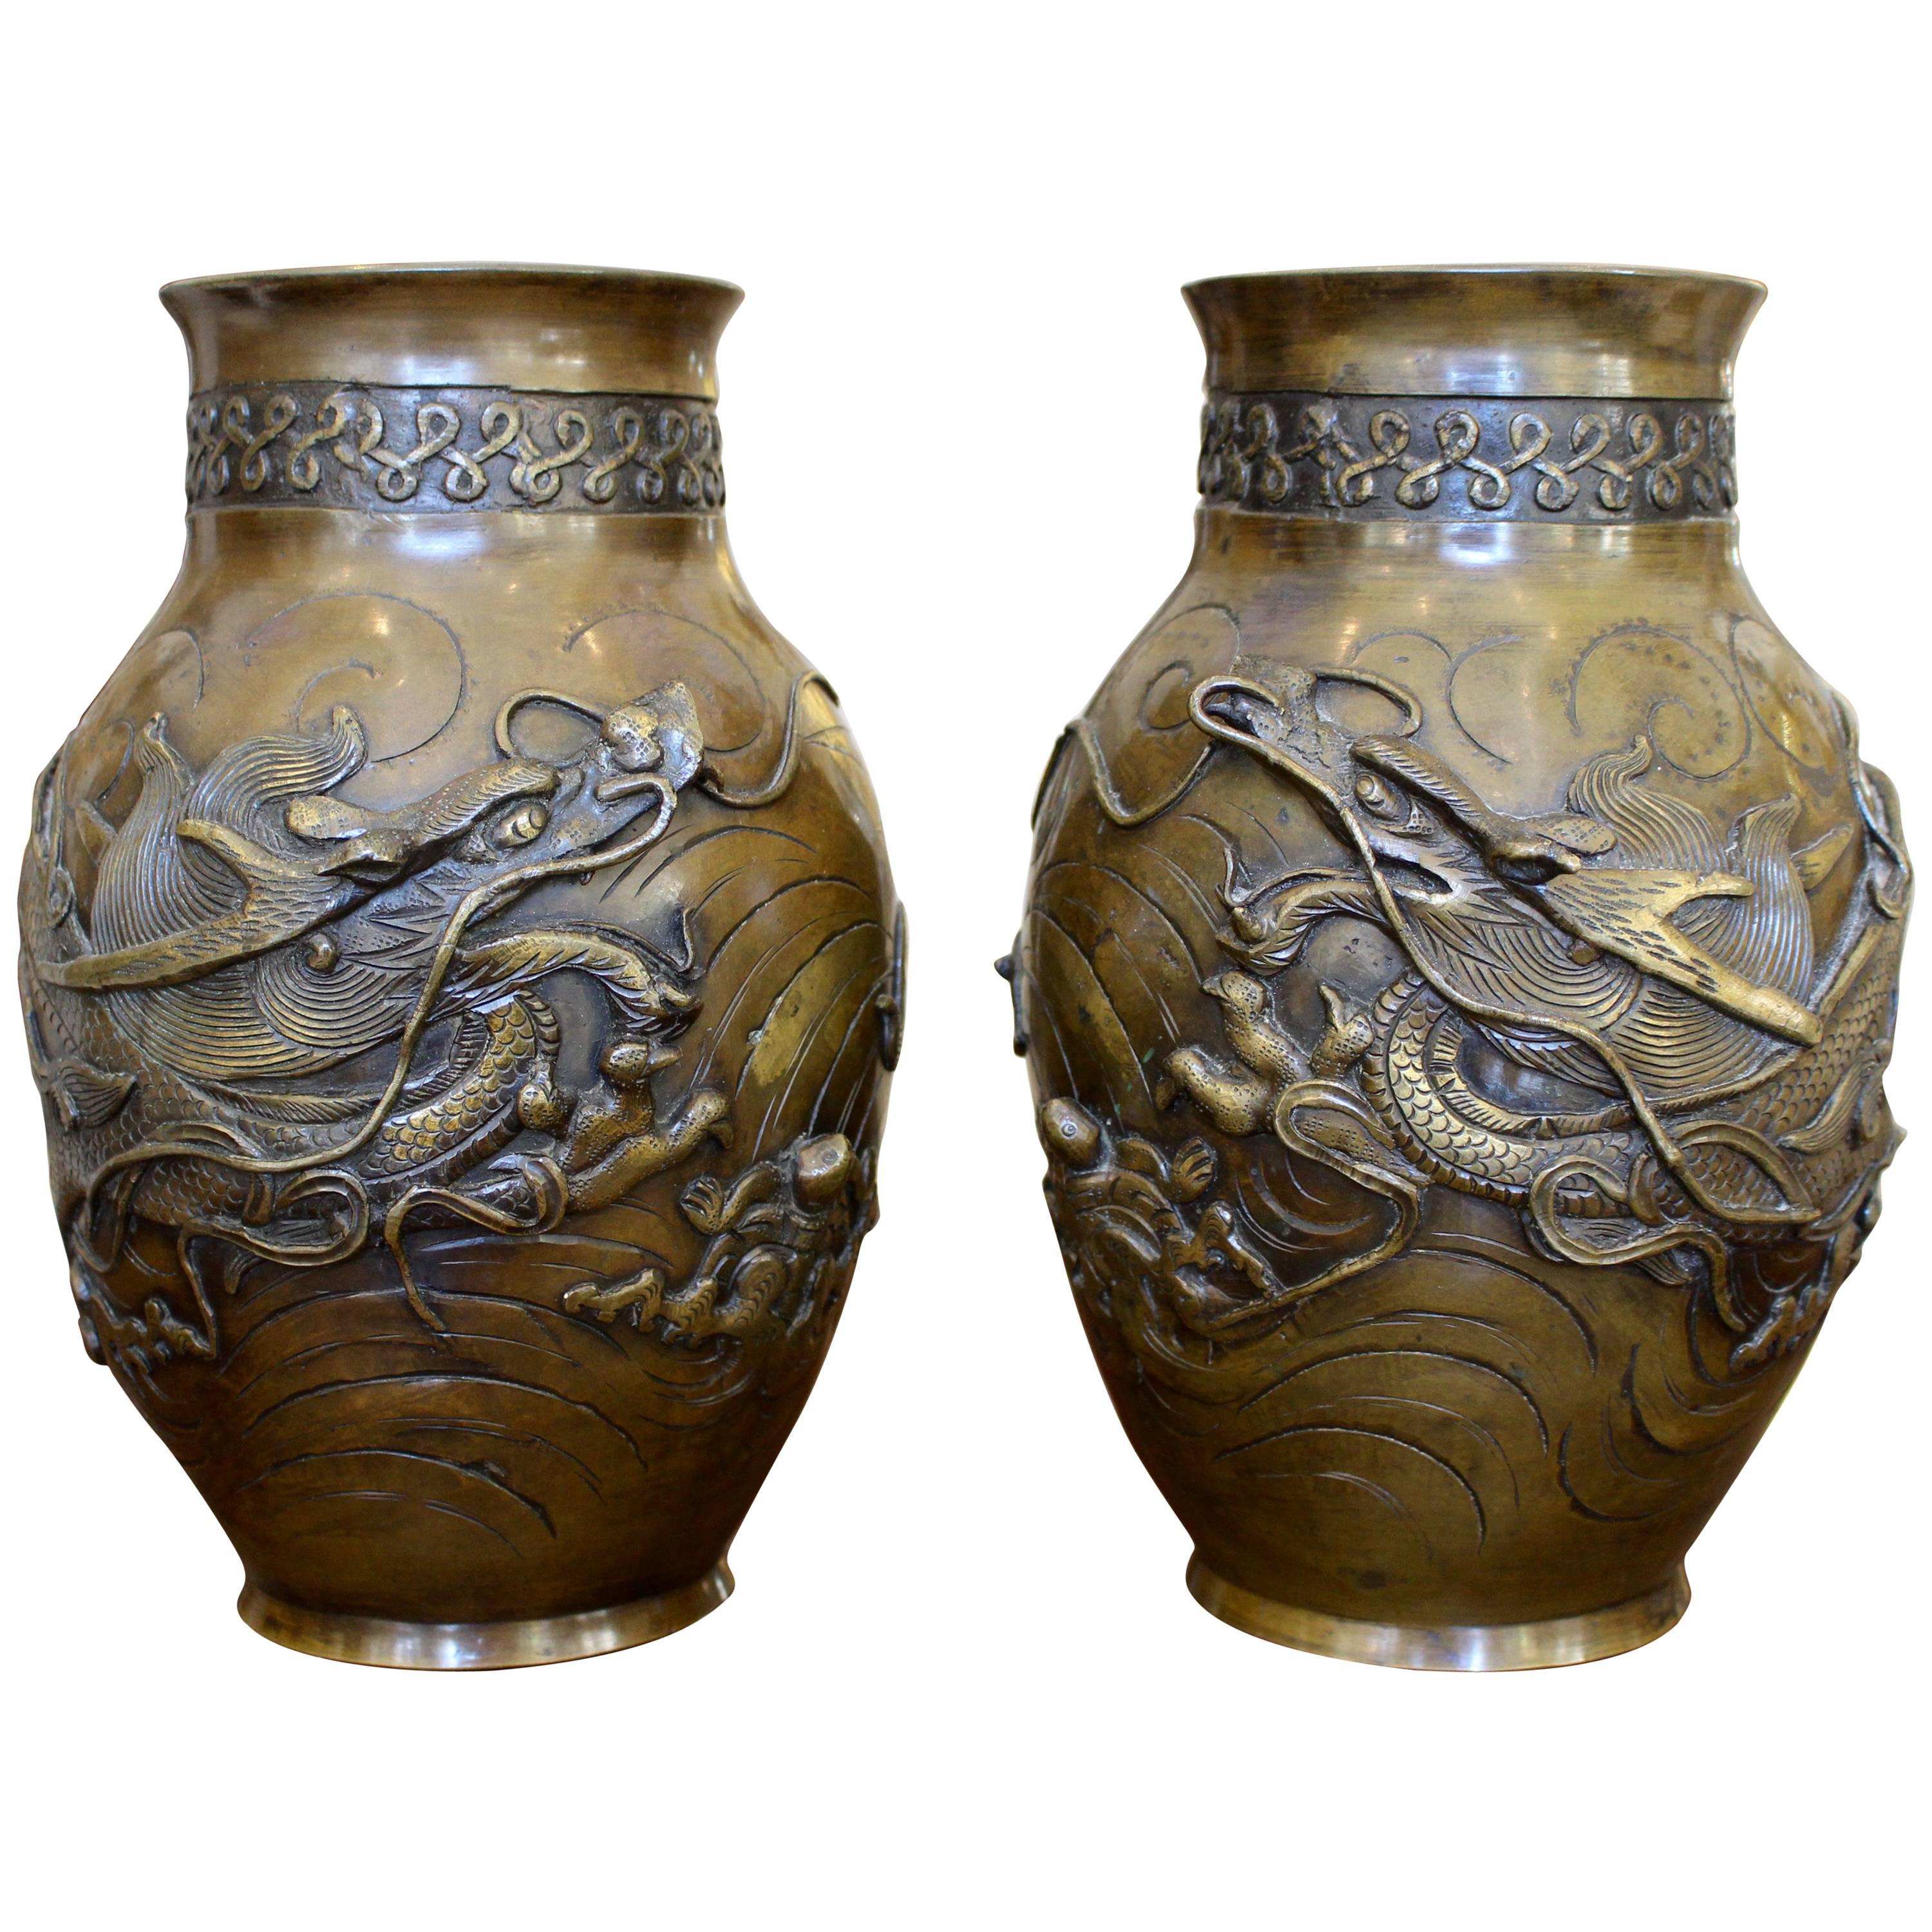 Paire de vases japonais en bronze finement moulés avec des figures de dragons en haut-relief